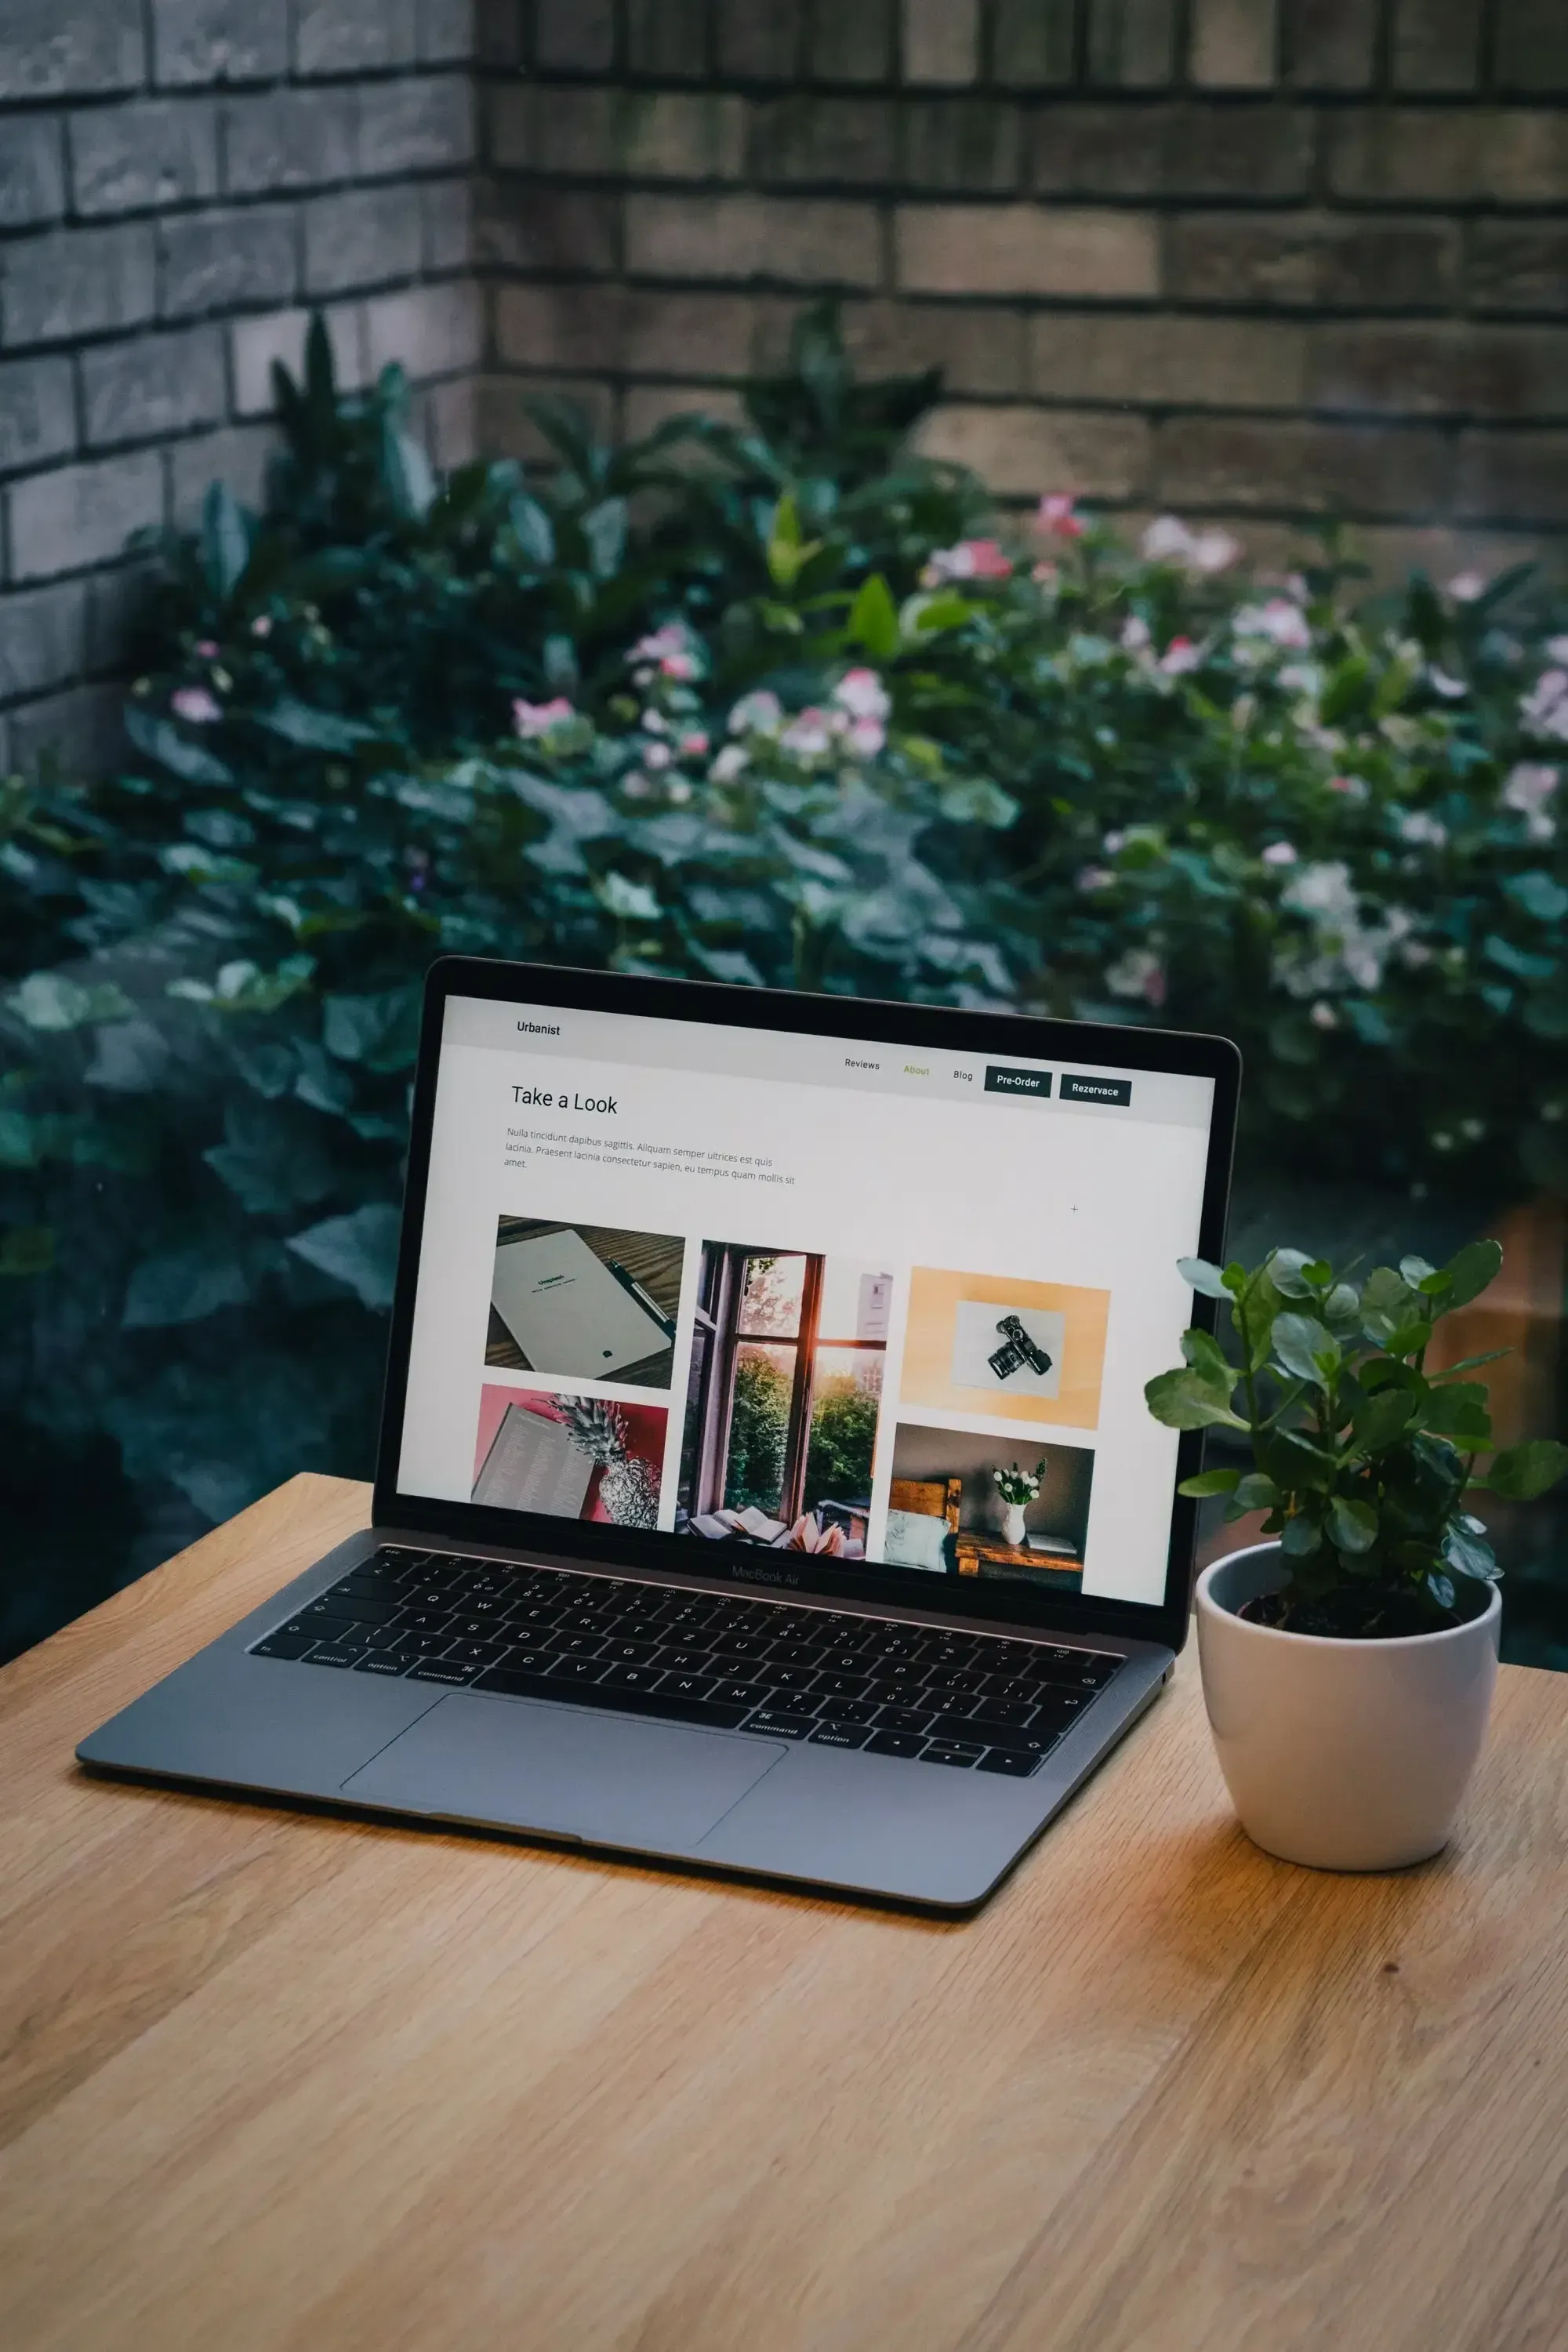 Laptop auf einem Holztisch, neben einer Topfpflanze, in einem Garten, der eine Website zeigt.